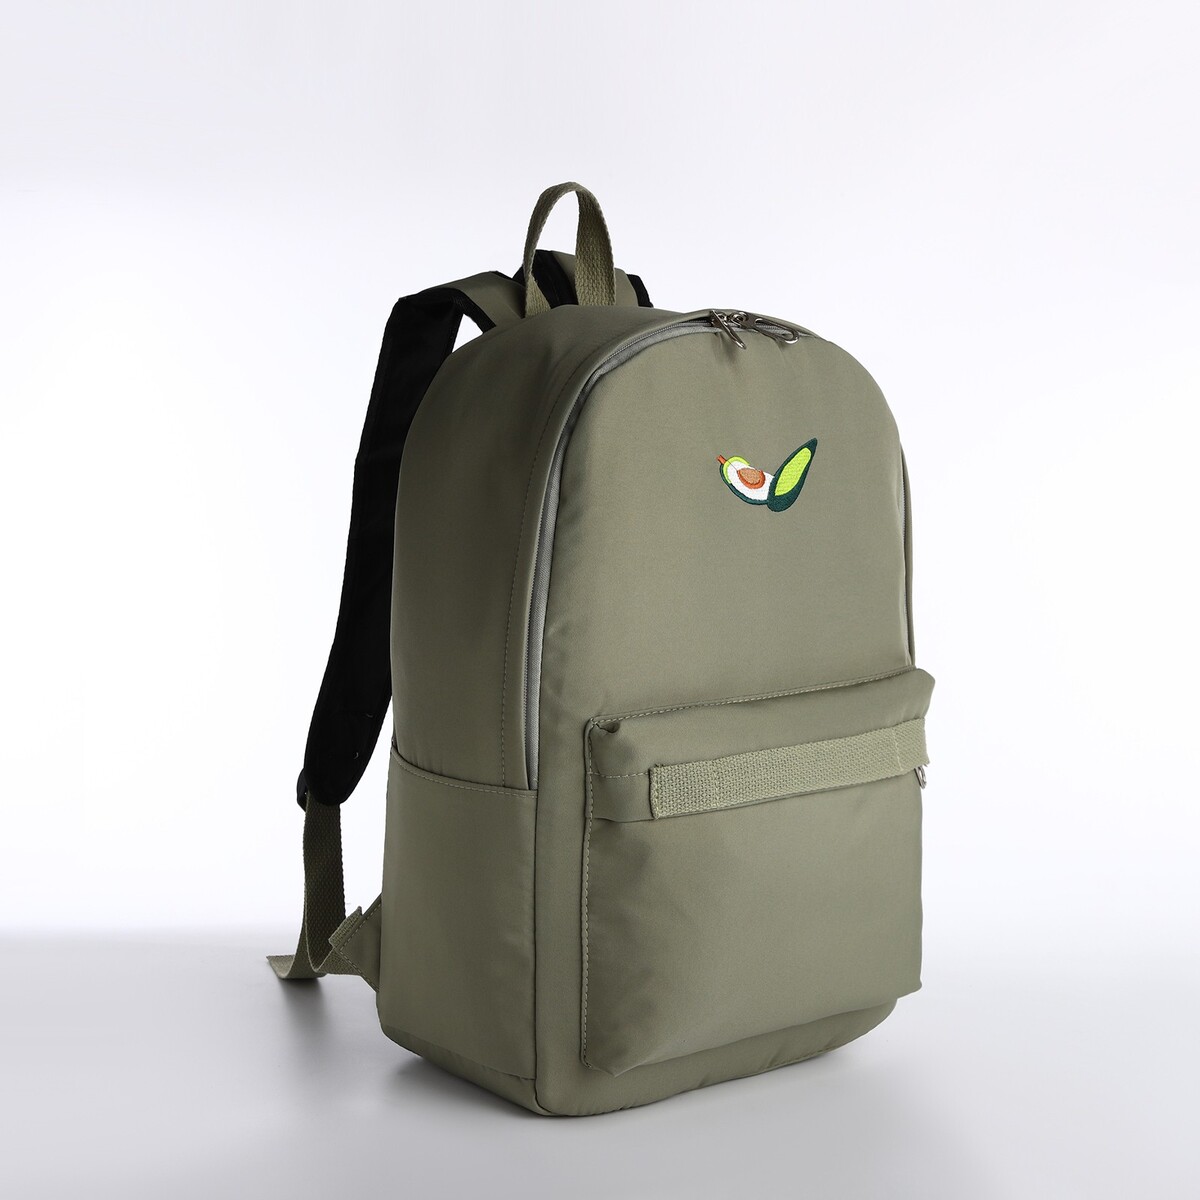 Рюкзак молодежный из текстиля на молнии, наружный карман, сумочка, цвет зеленый